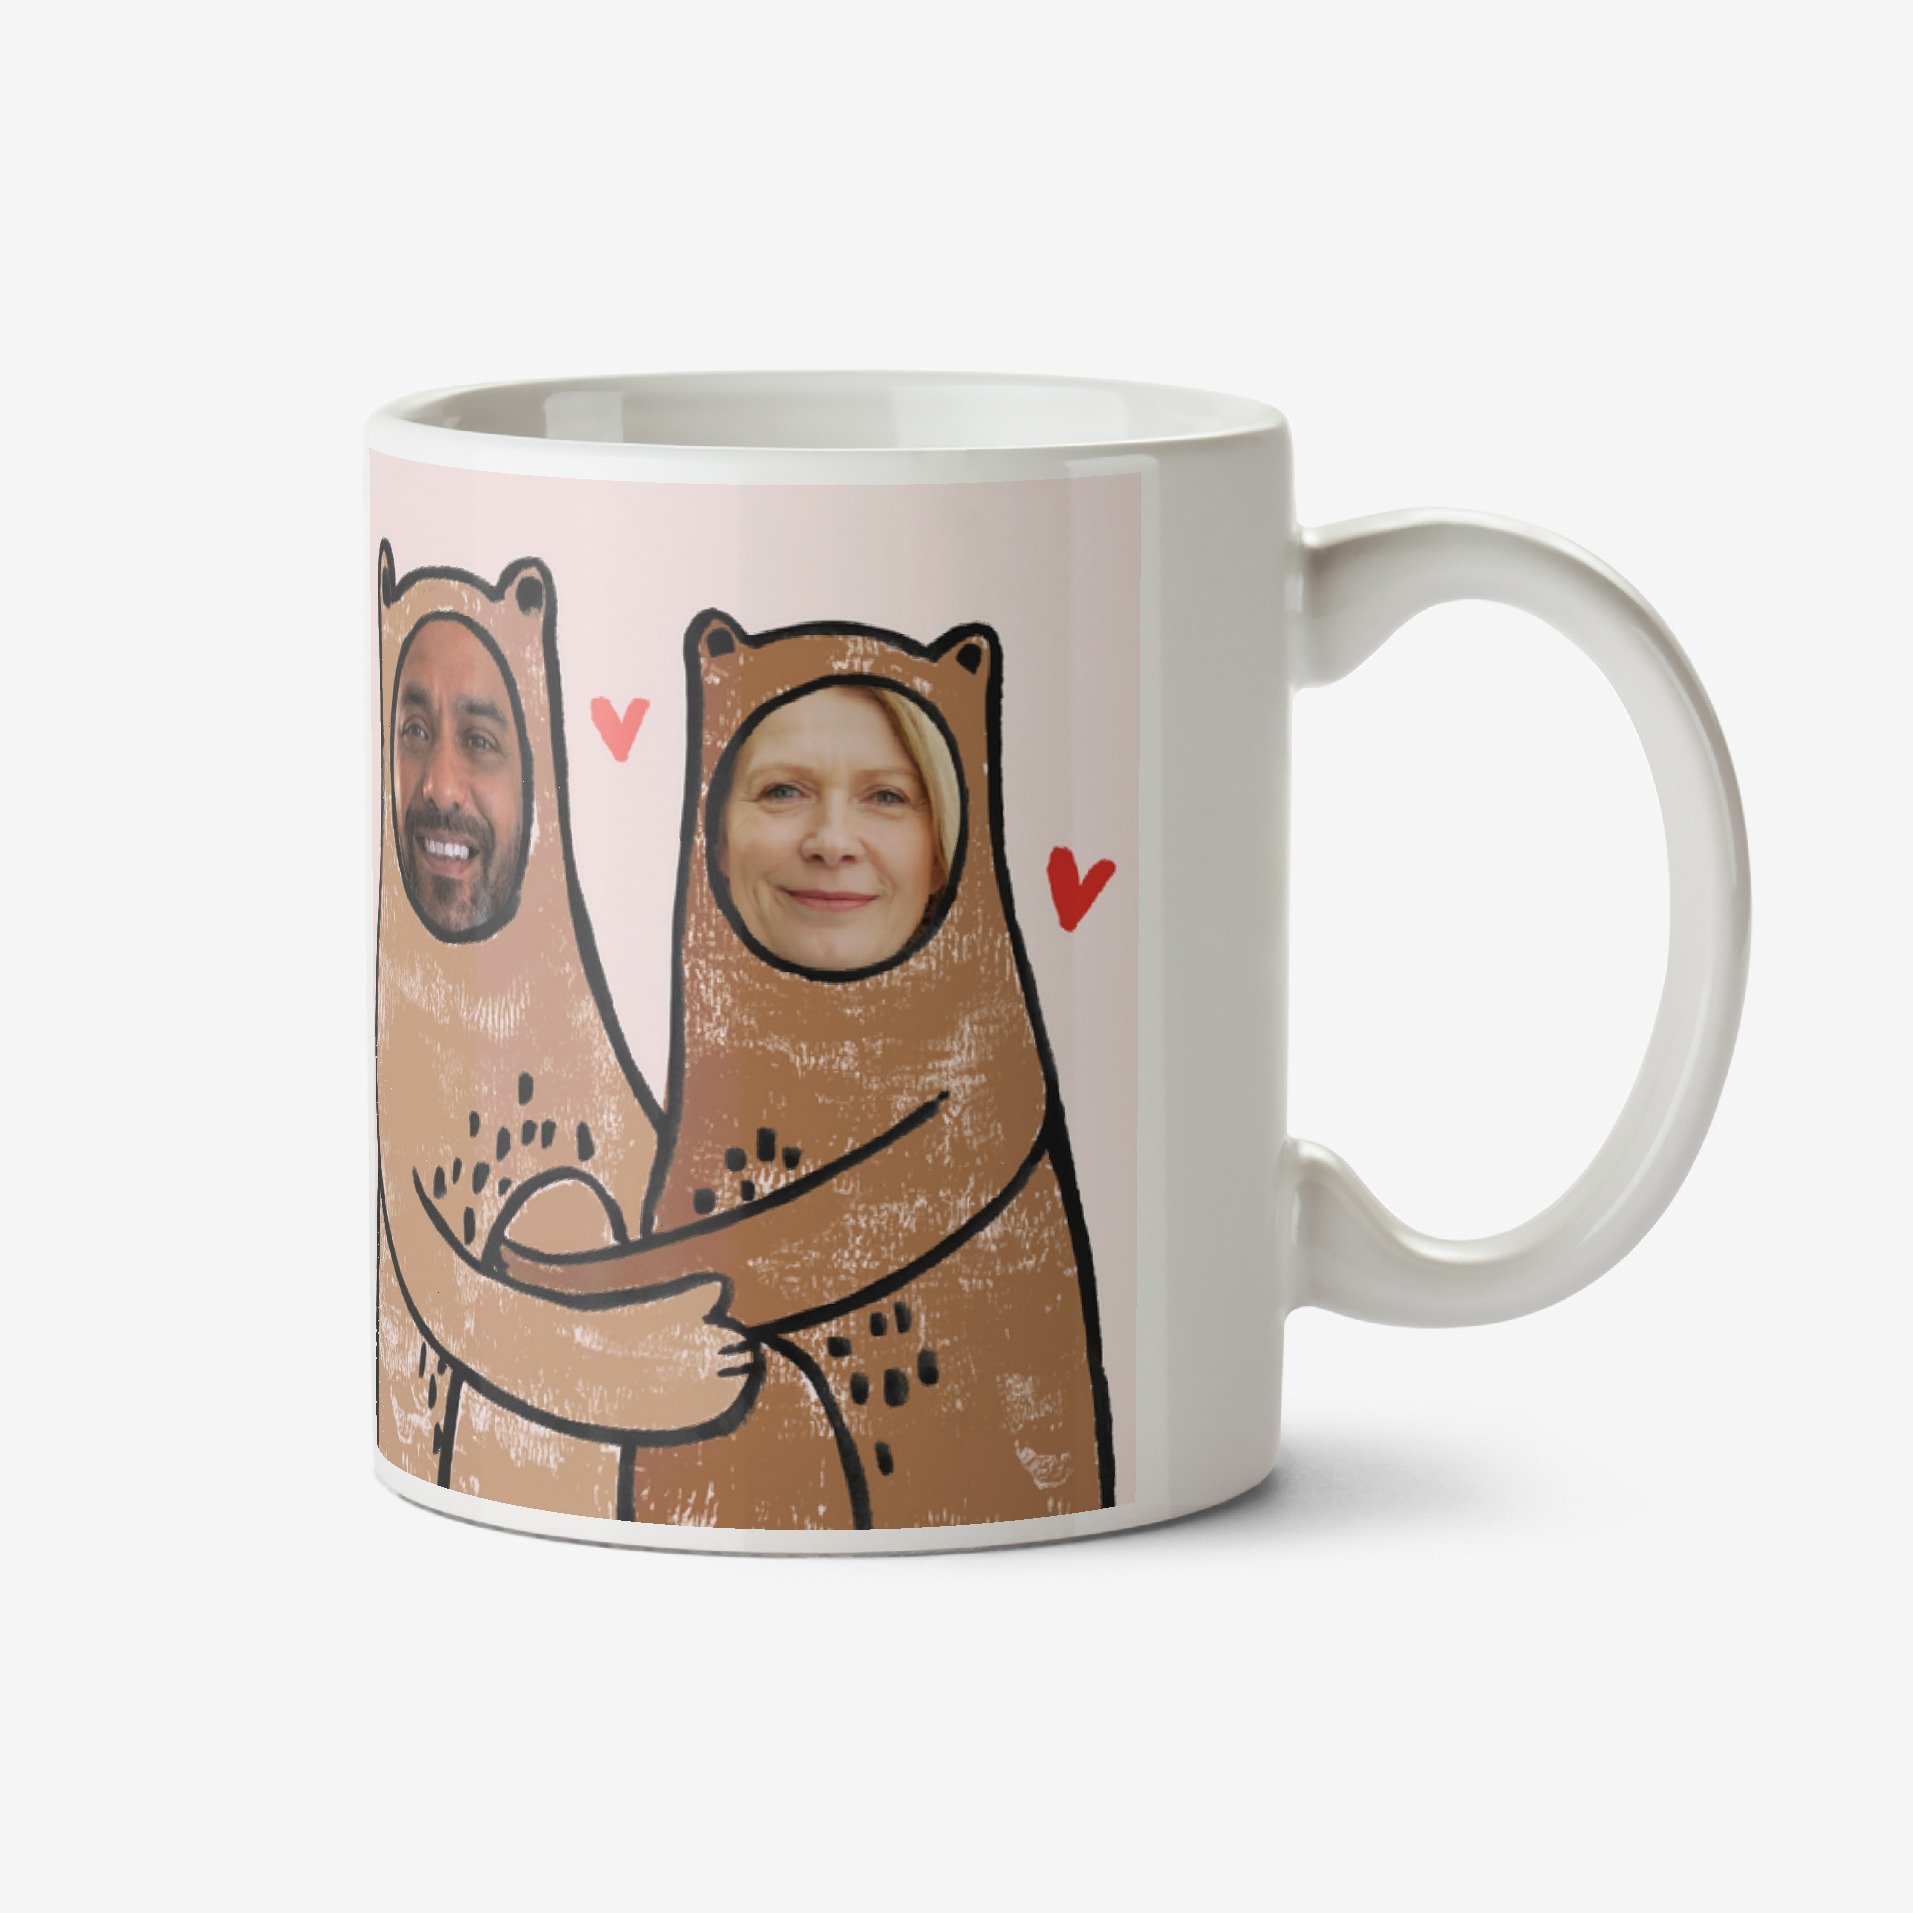 Moonpig Illustrated Love You Beary Much Face In Hole Photo Upload Mug Ceramic Mug